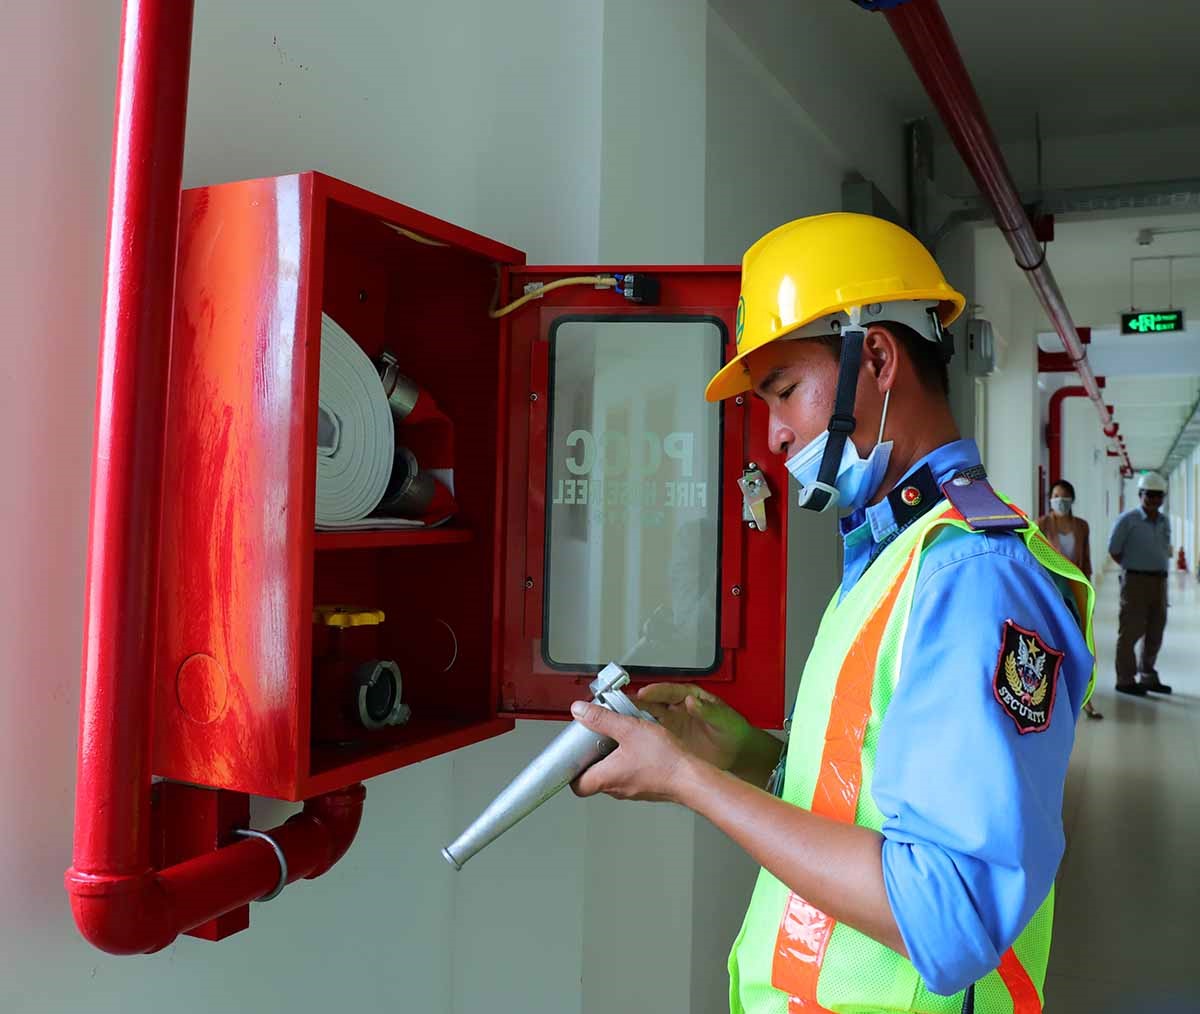 Hệ thống phóng cháy chữa cháy hiện đại được bố trí đầy đủ tại khu nhà ở và thường xuyên được kiểm tra đảm bảo cho công tác phòng cháy chữa cháy.